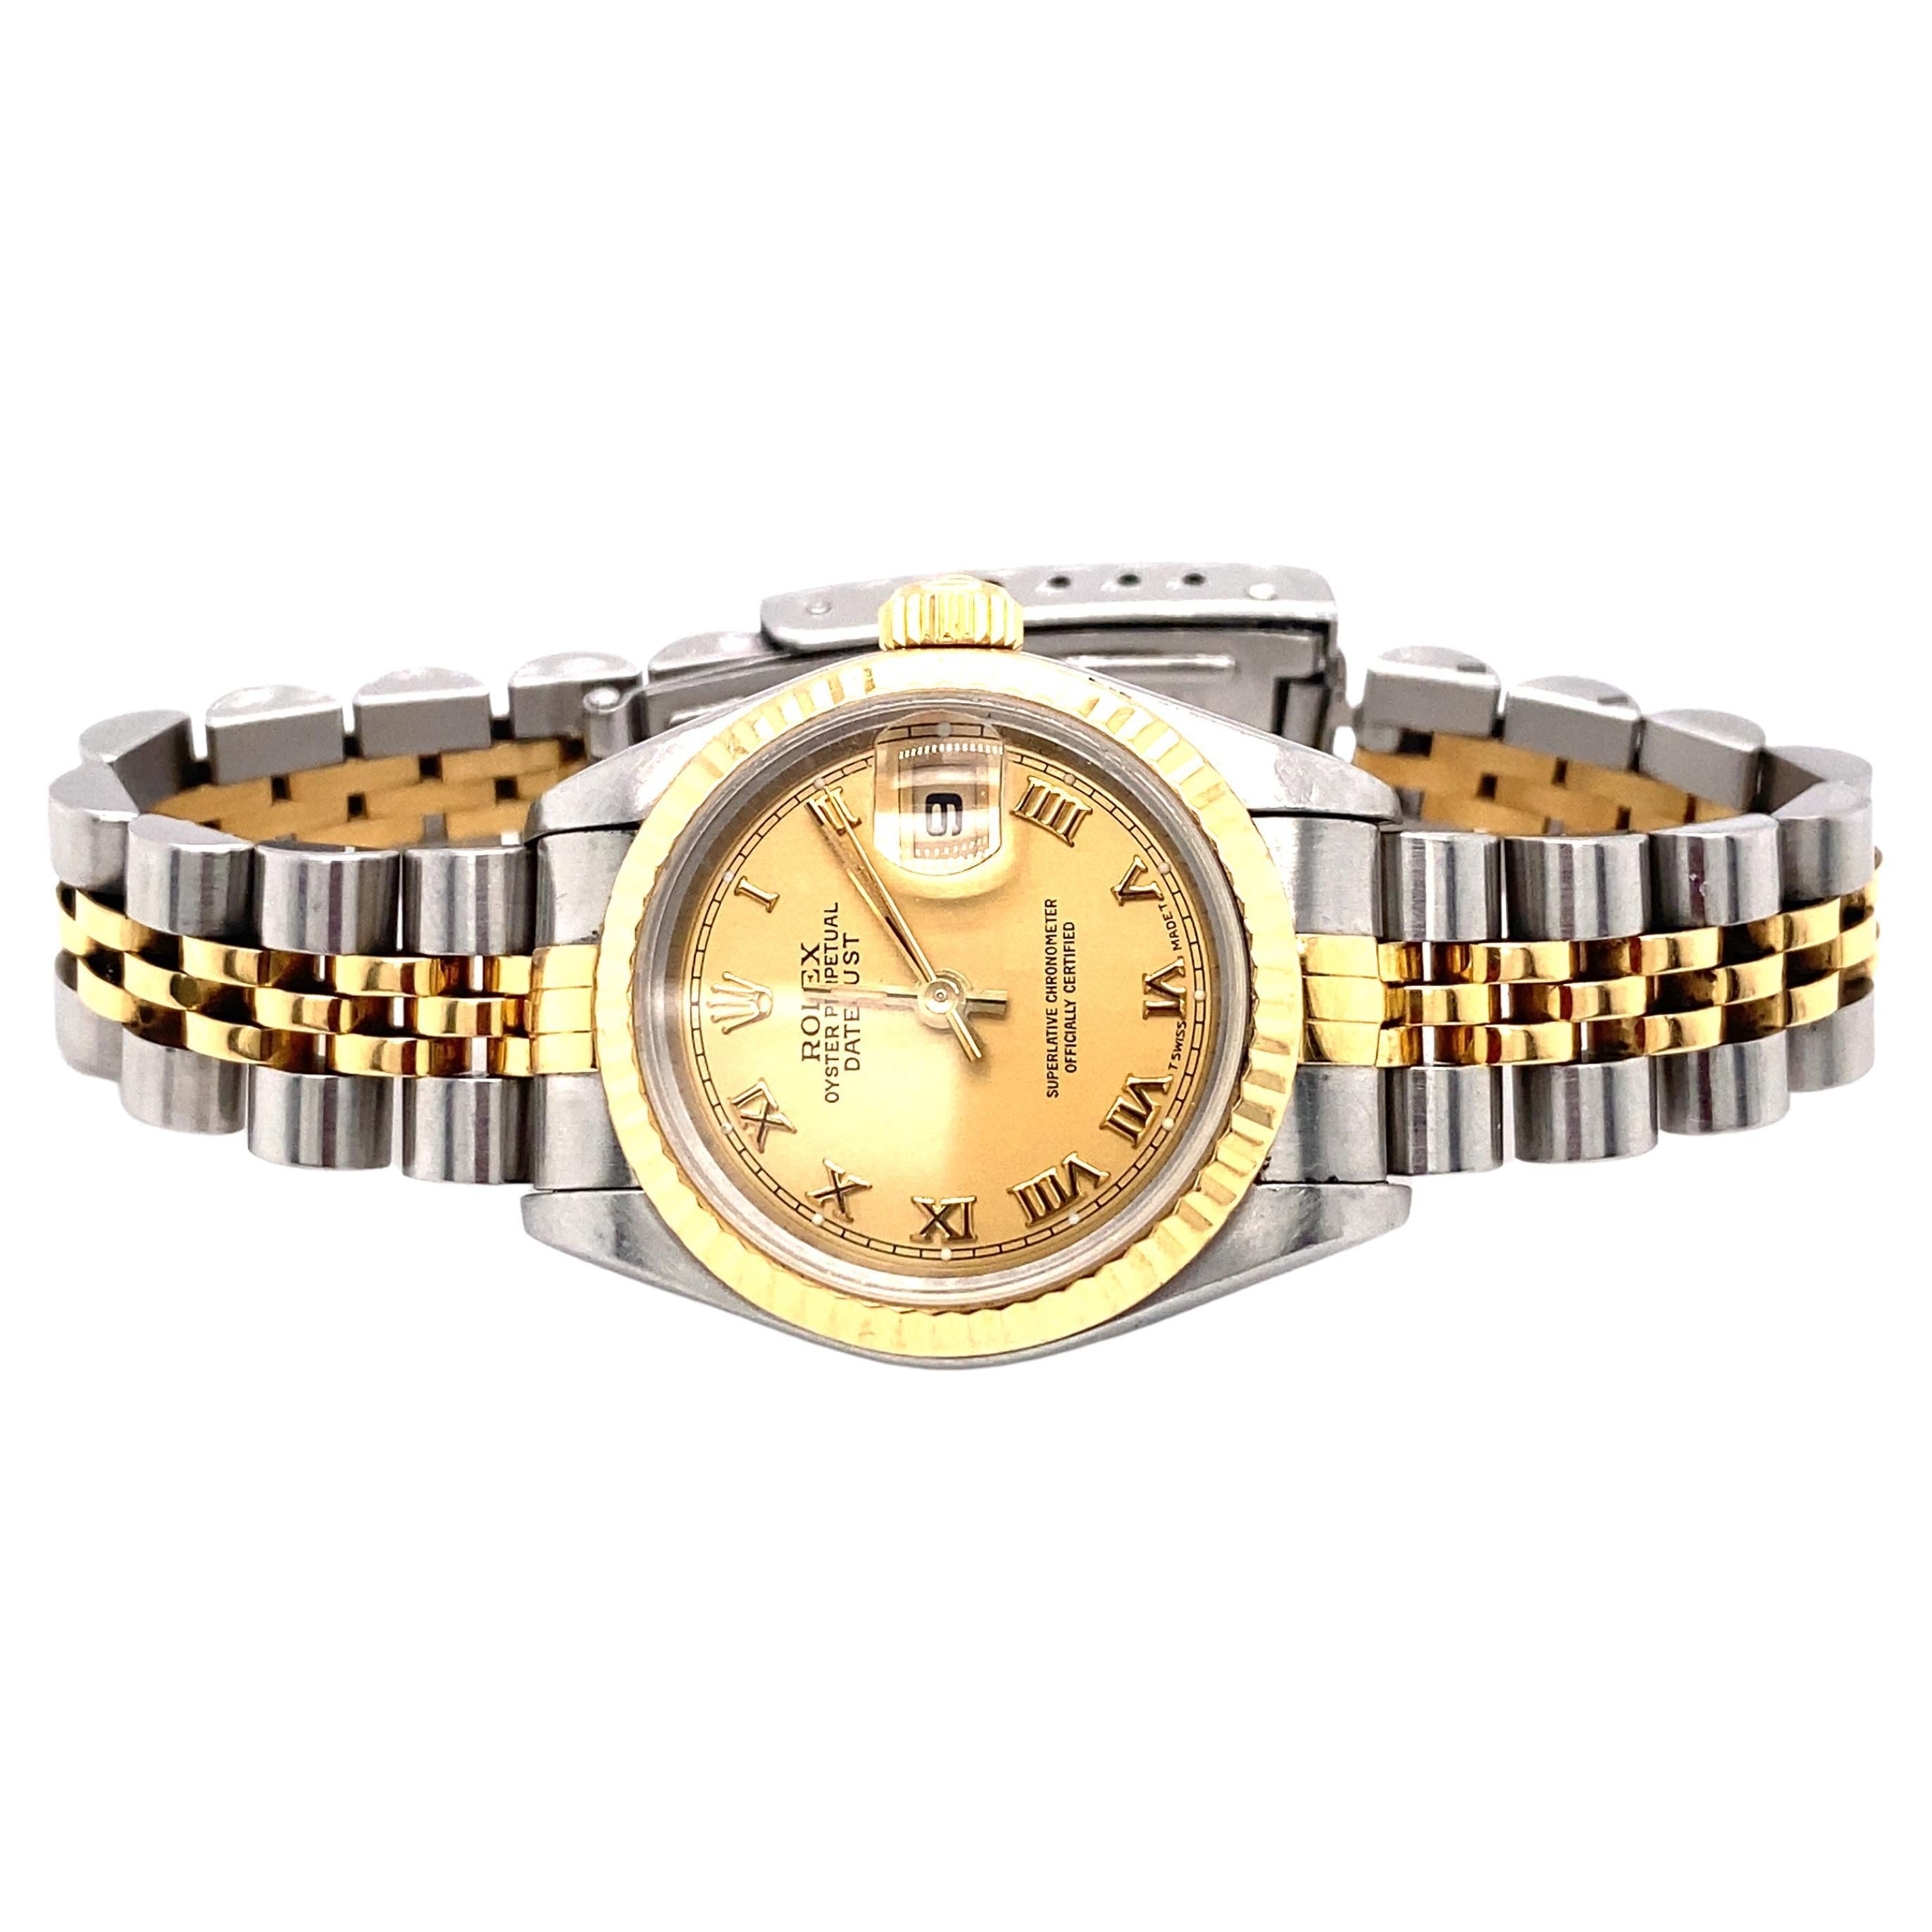 1995 Rolex Datejust Ladies Wrist Watch in Stainless Steel and 18 Karat Gold